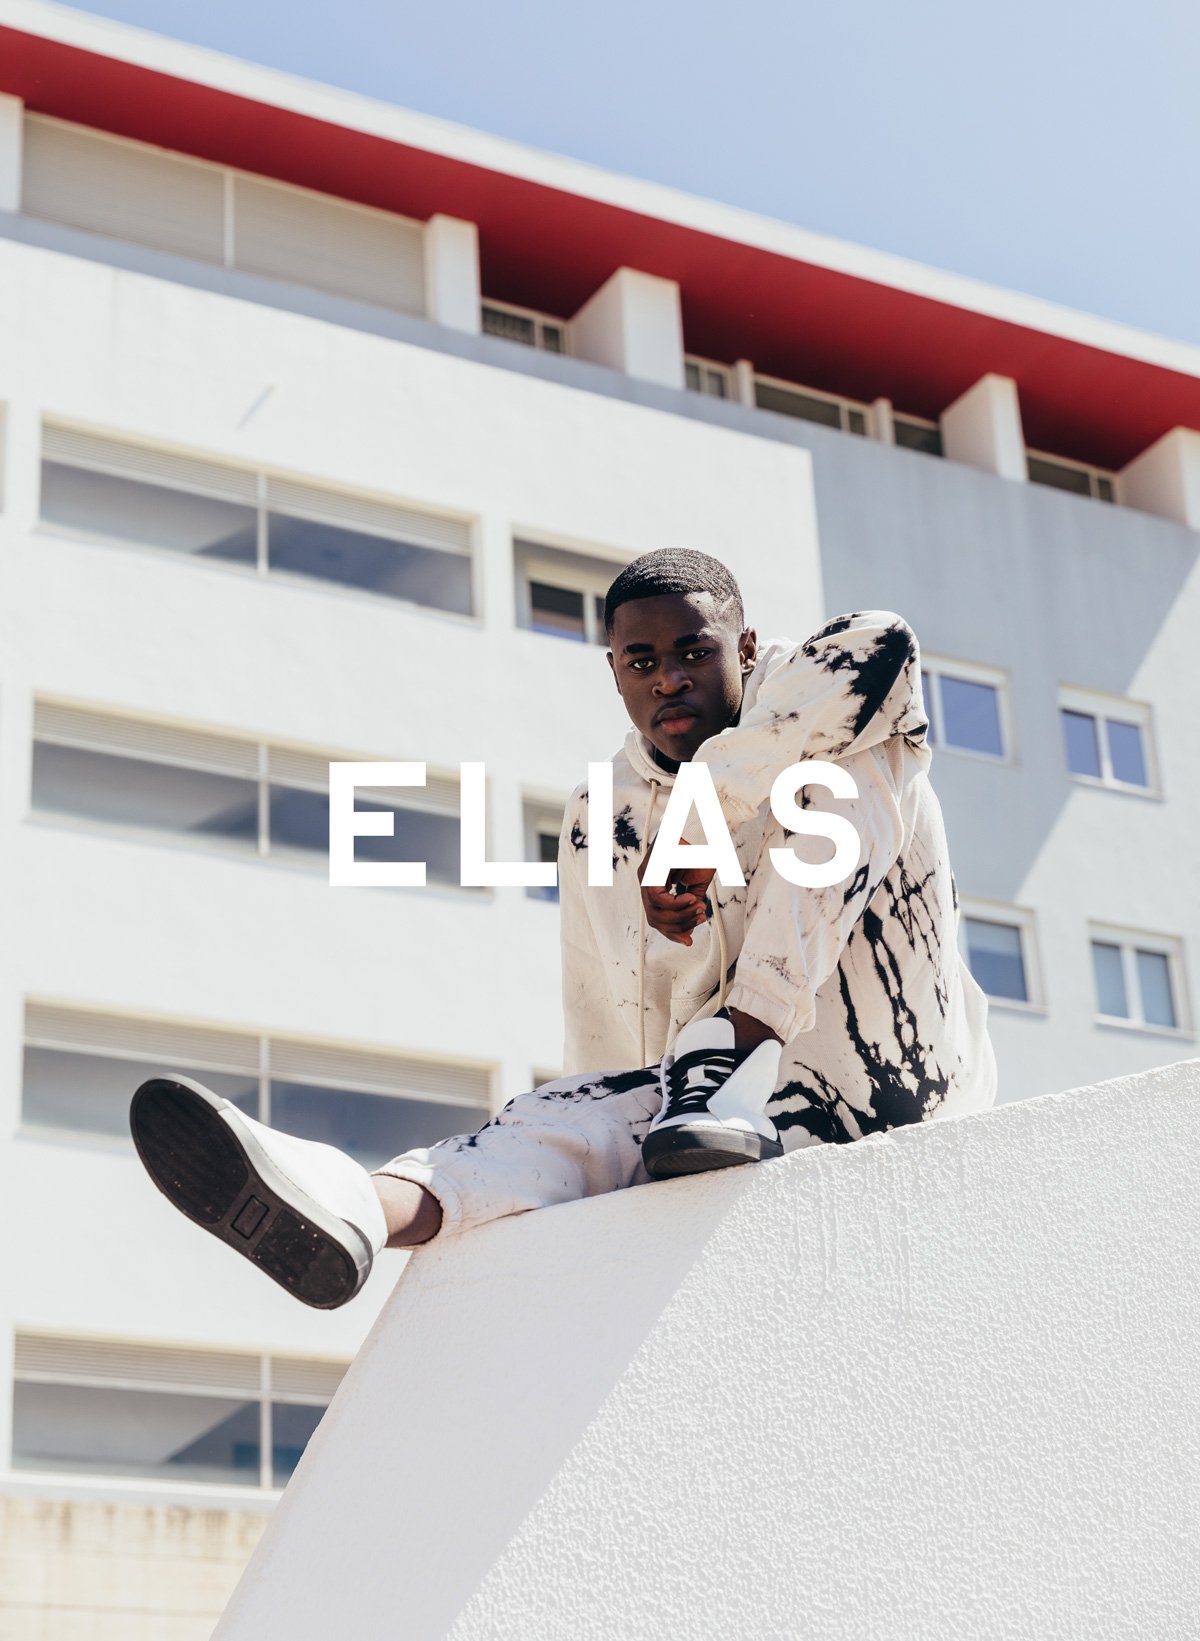 Elias seduto su un muro, indossando Diverge sneakers, promuovendo l'impatto sociale e le scarpe personalizzate attraverso il progetto Imagine.